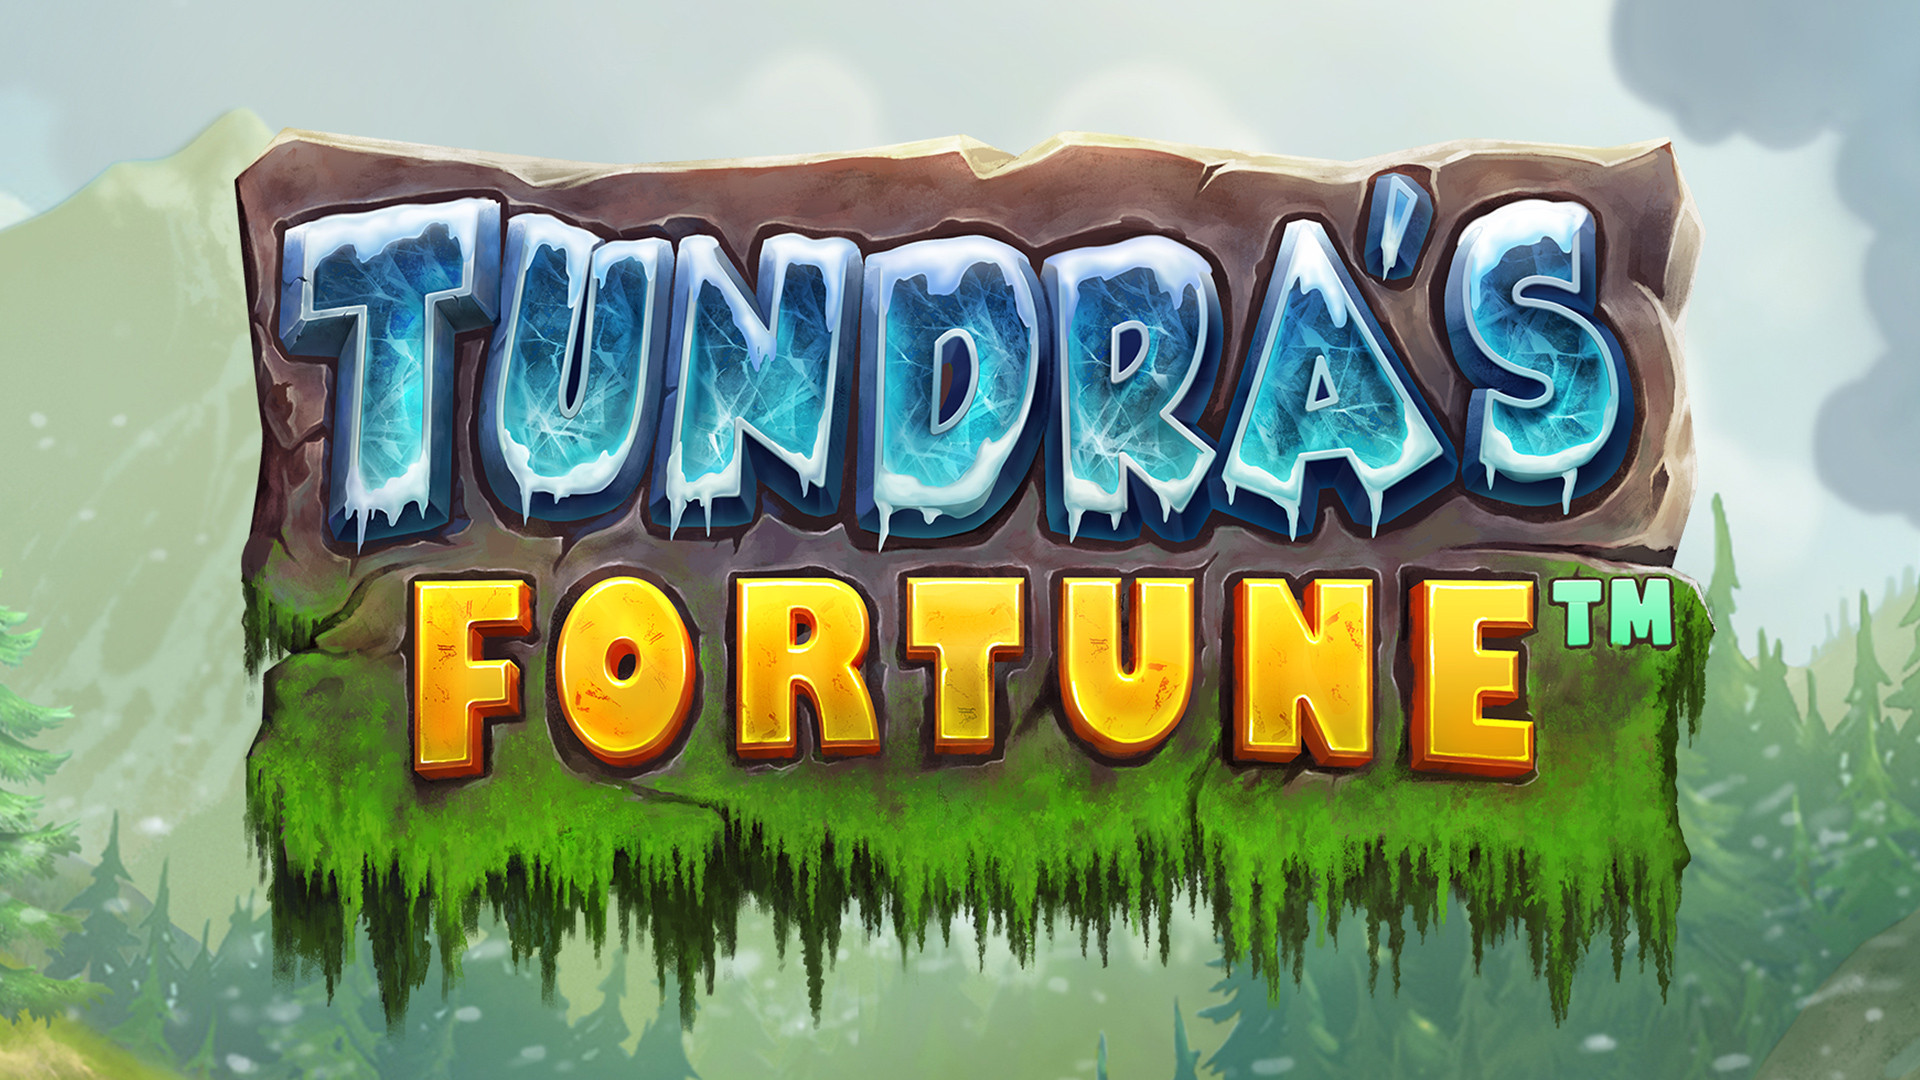 Tundra's Fortune